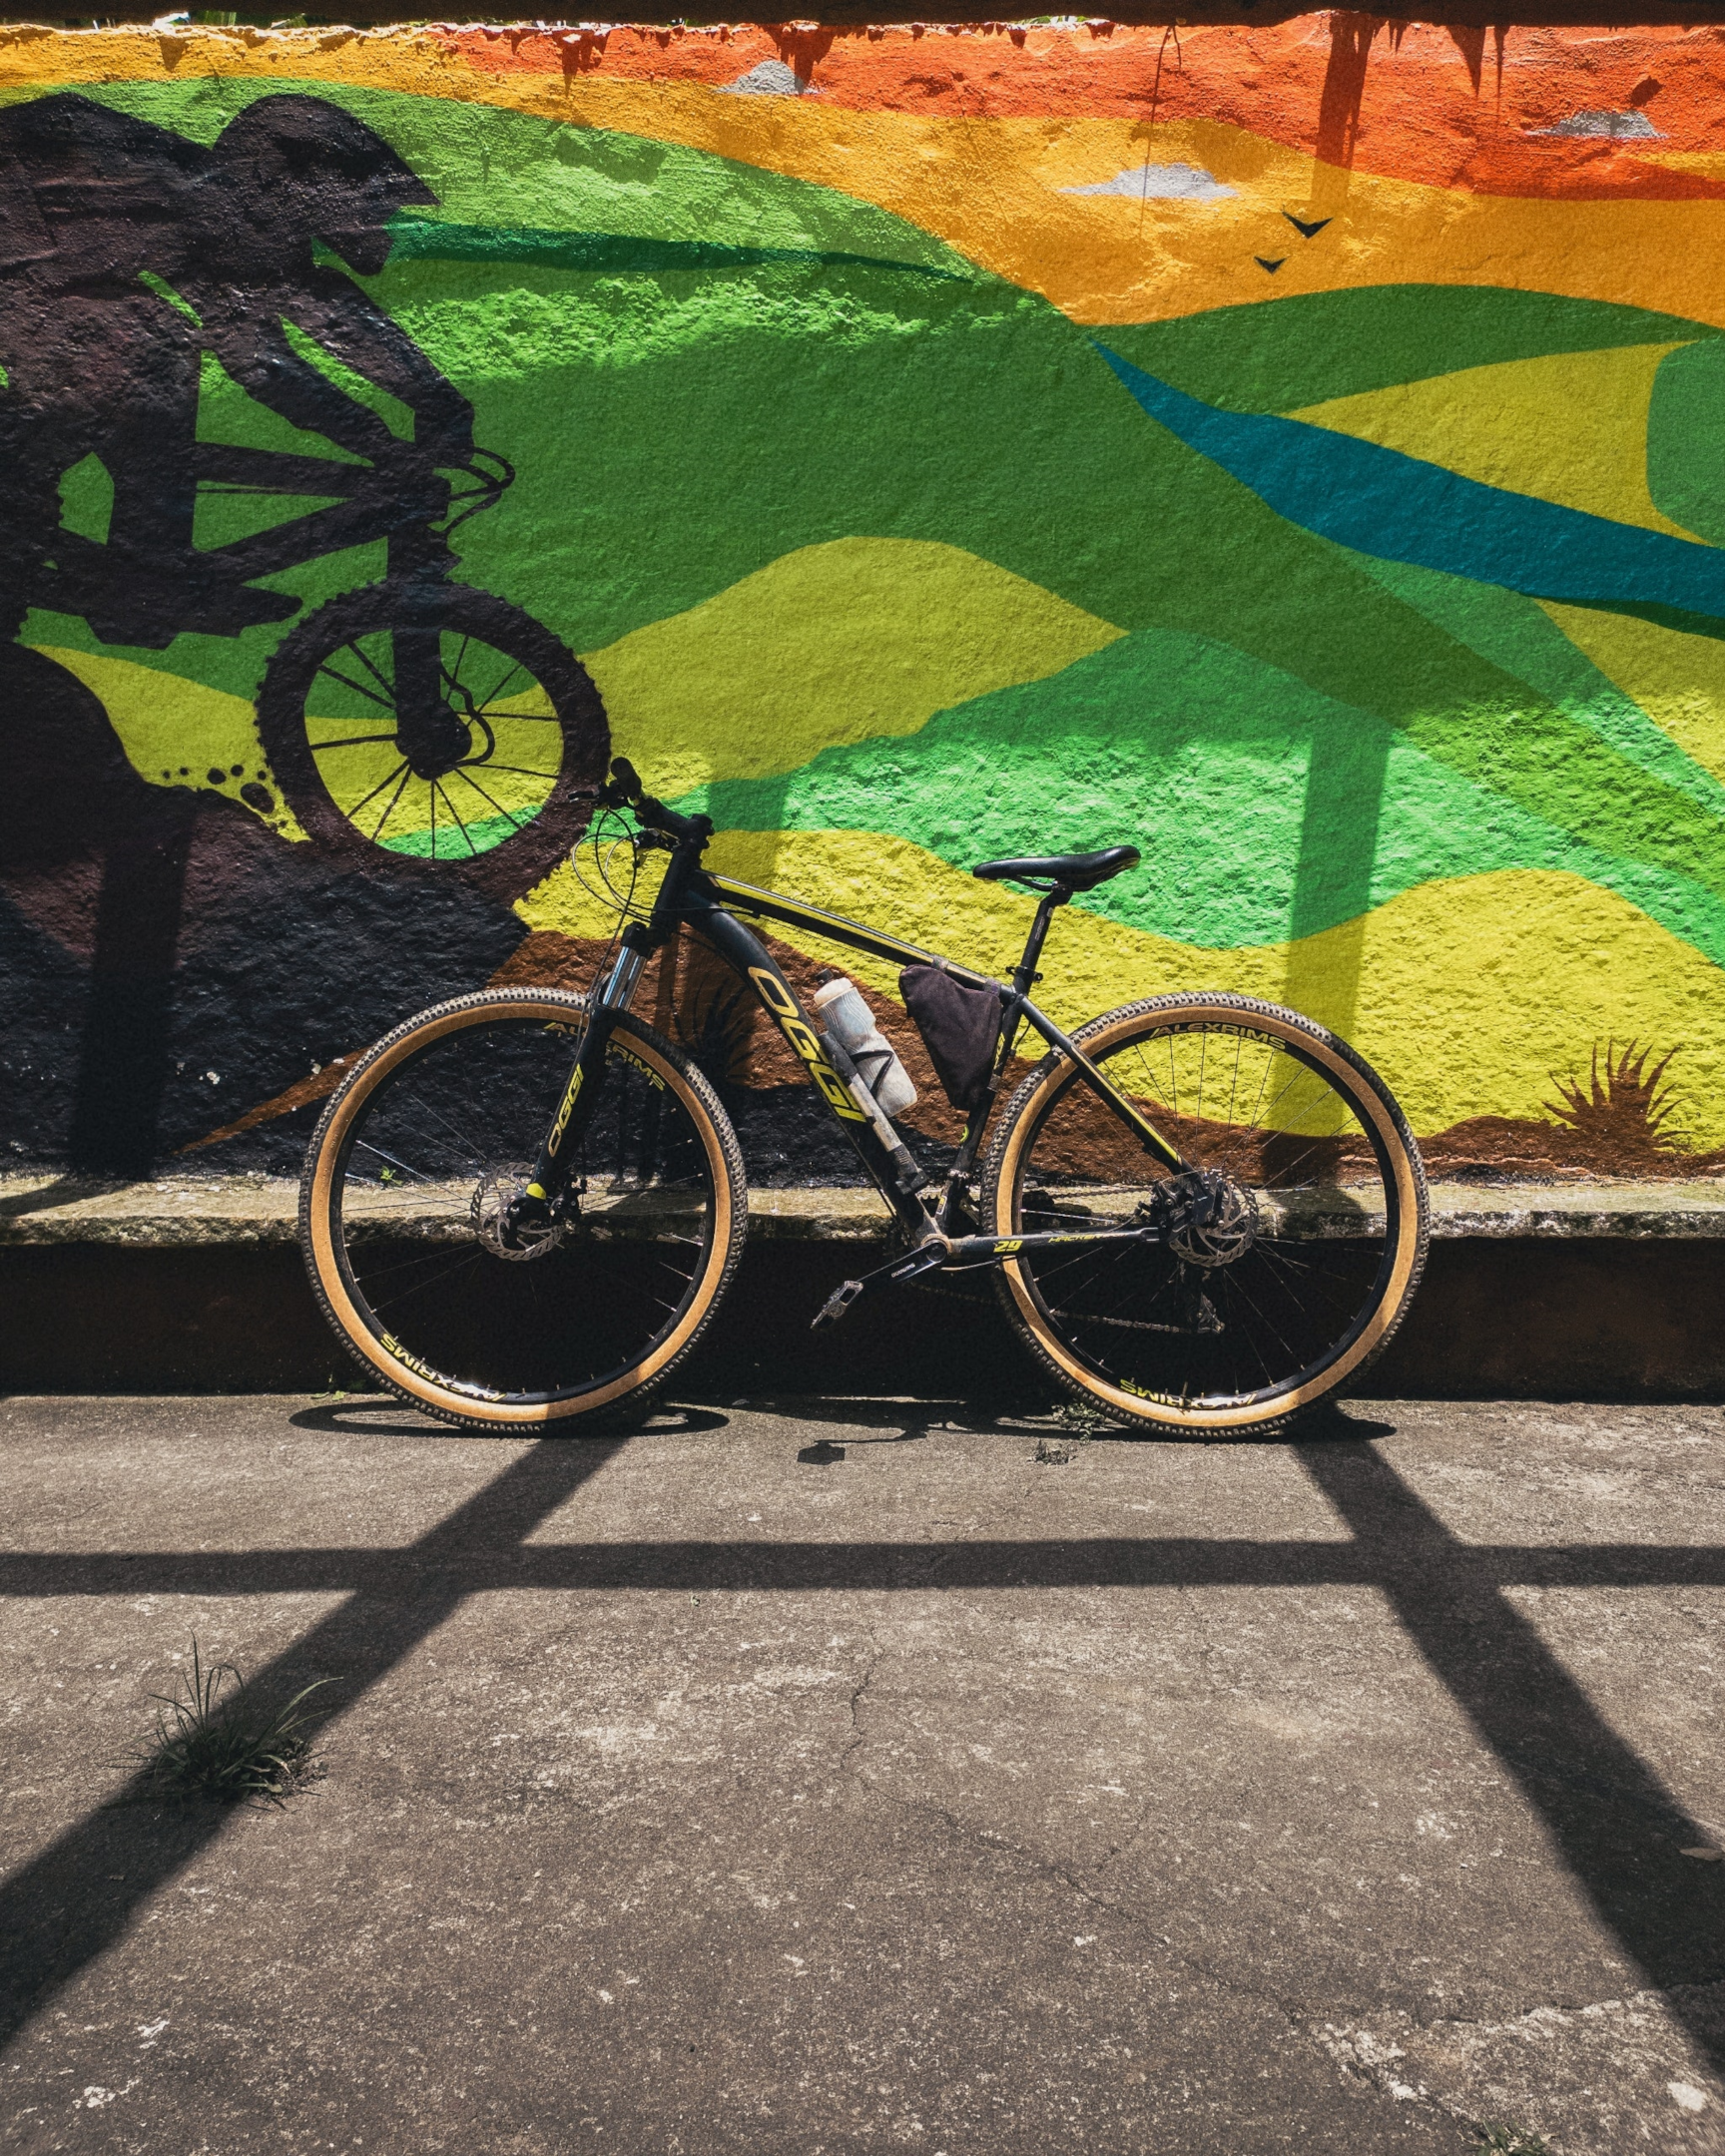 Bicicleta parada em ambiente urbano. Foto de Allan Carvalho, Pexels.